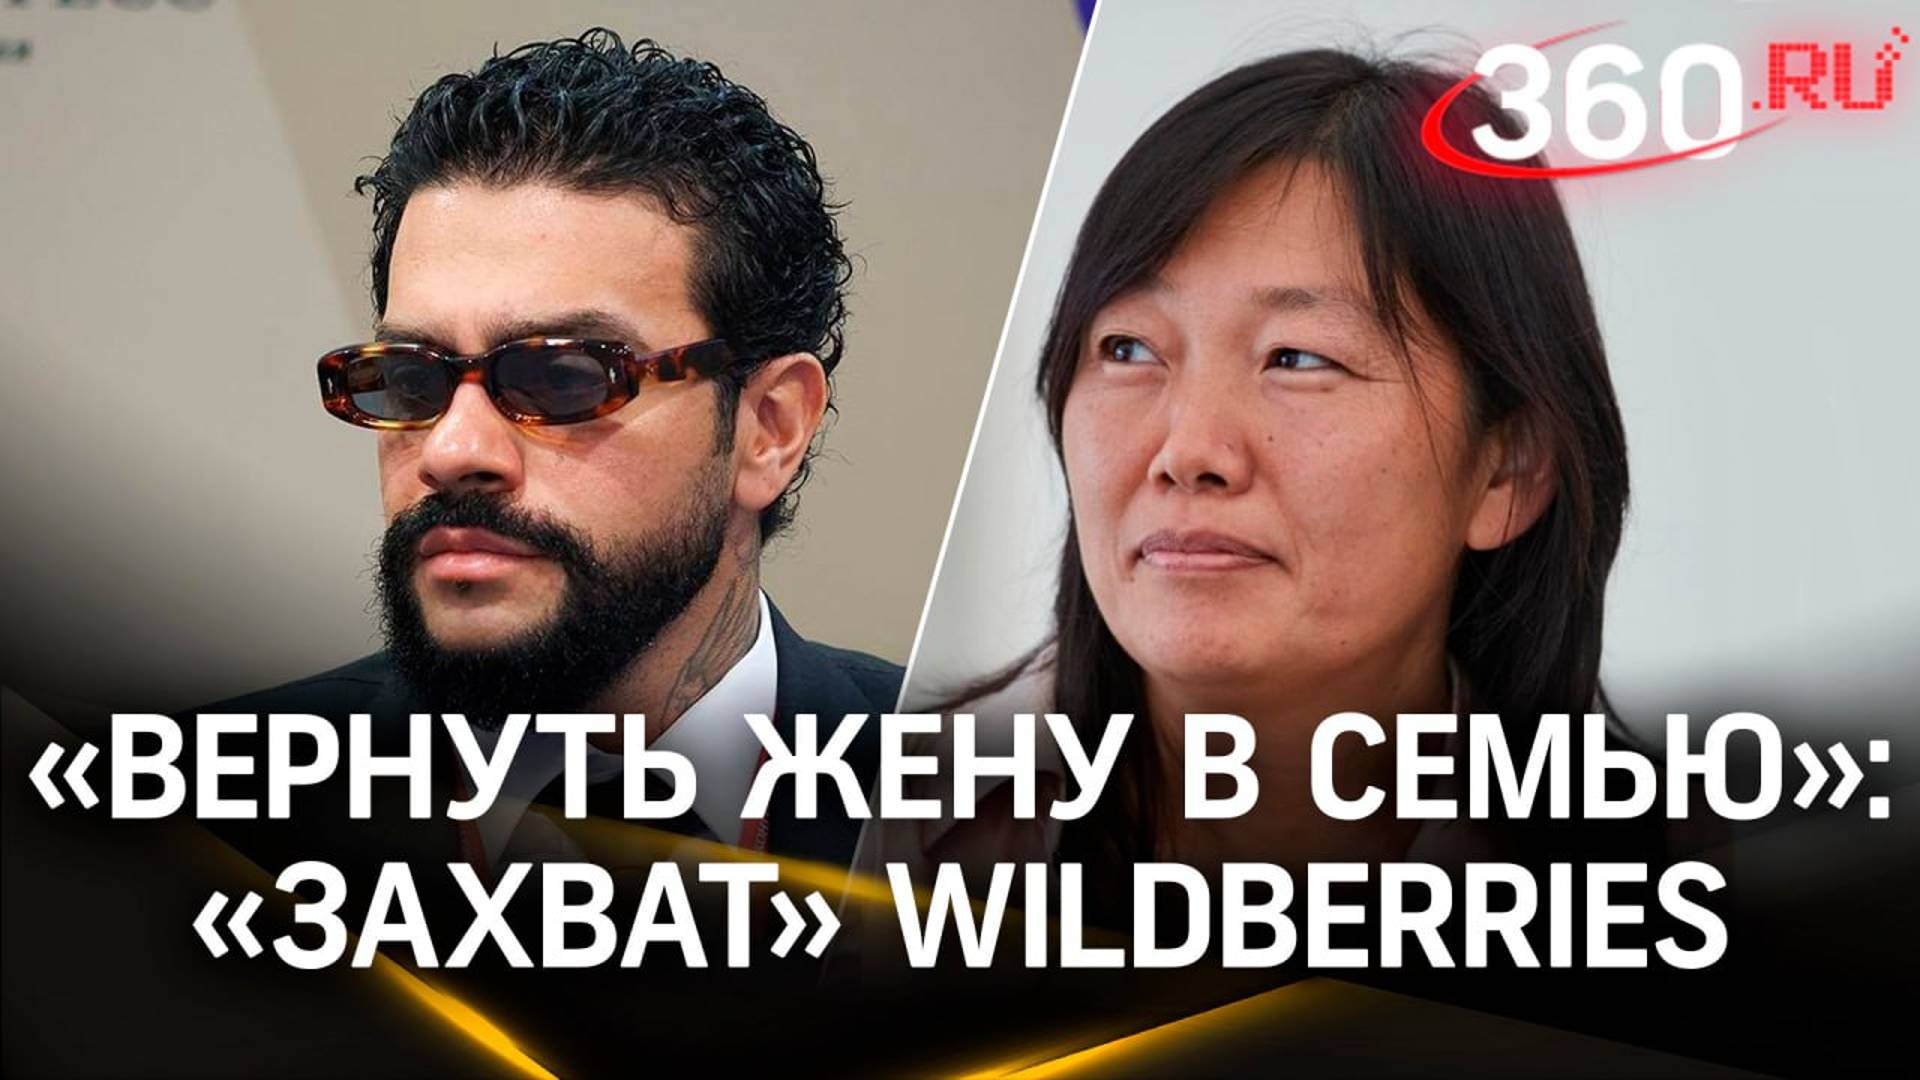 Тимати вслед за Кадыровым потребовал вернуть Татьяну Бакальчук в семью и не отжимать Вайлдберриз